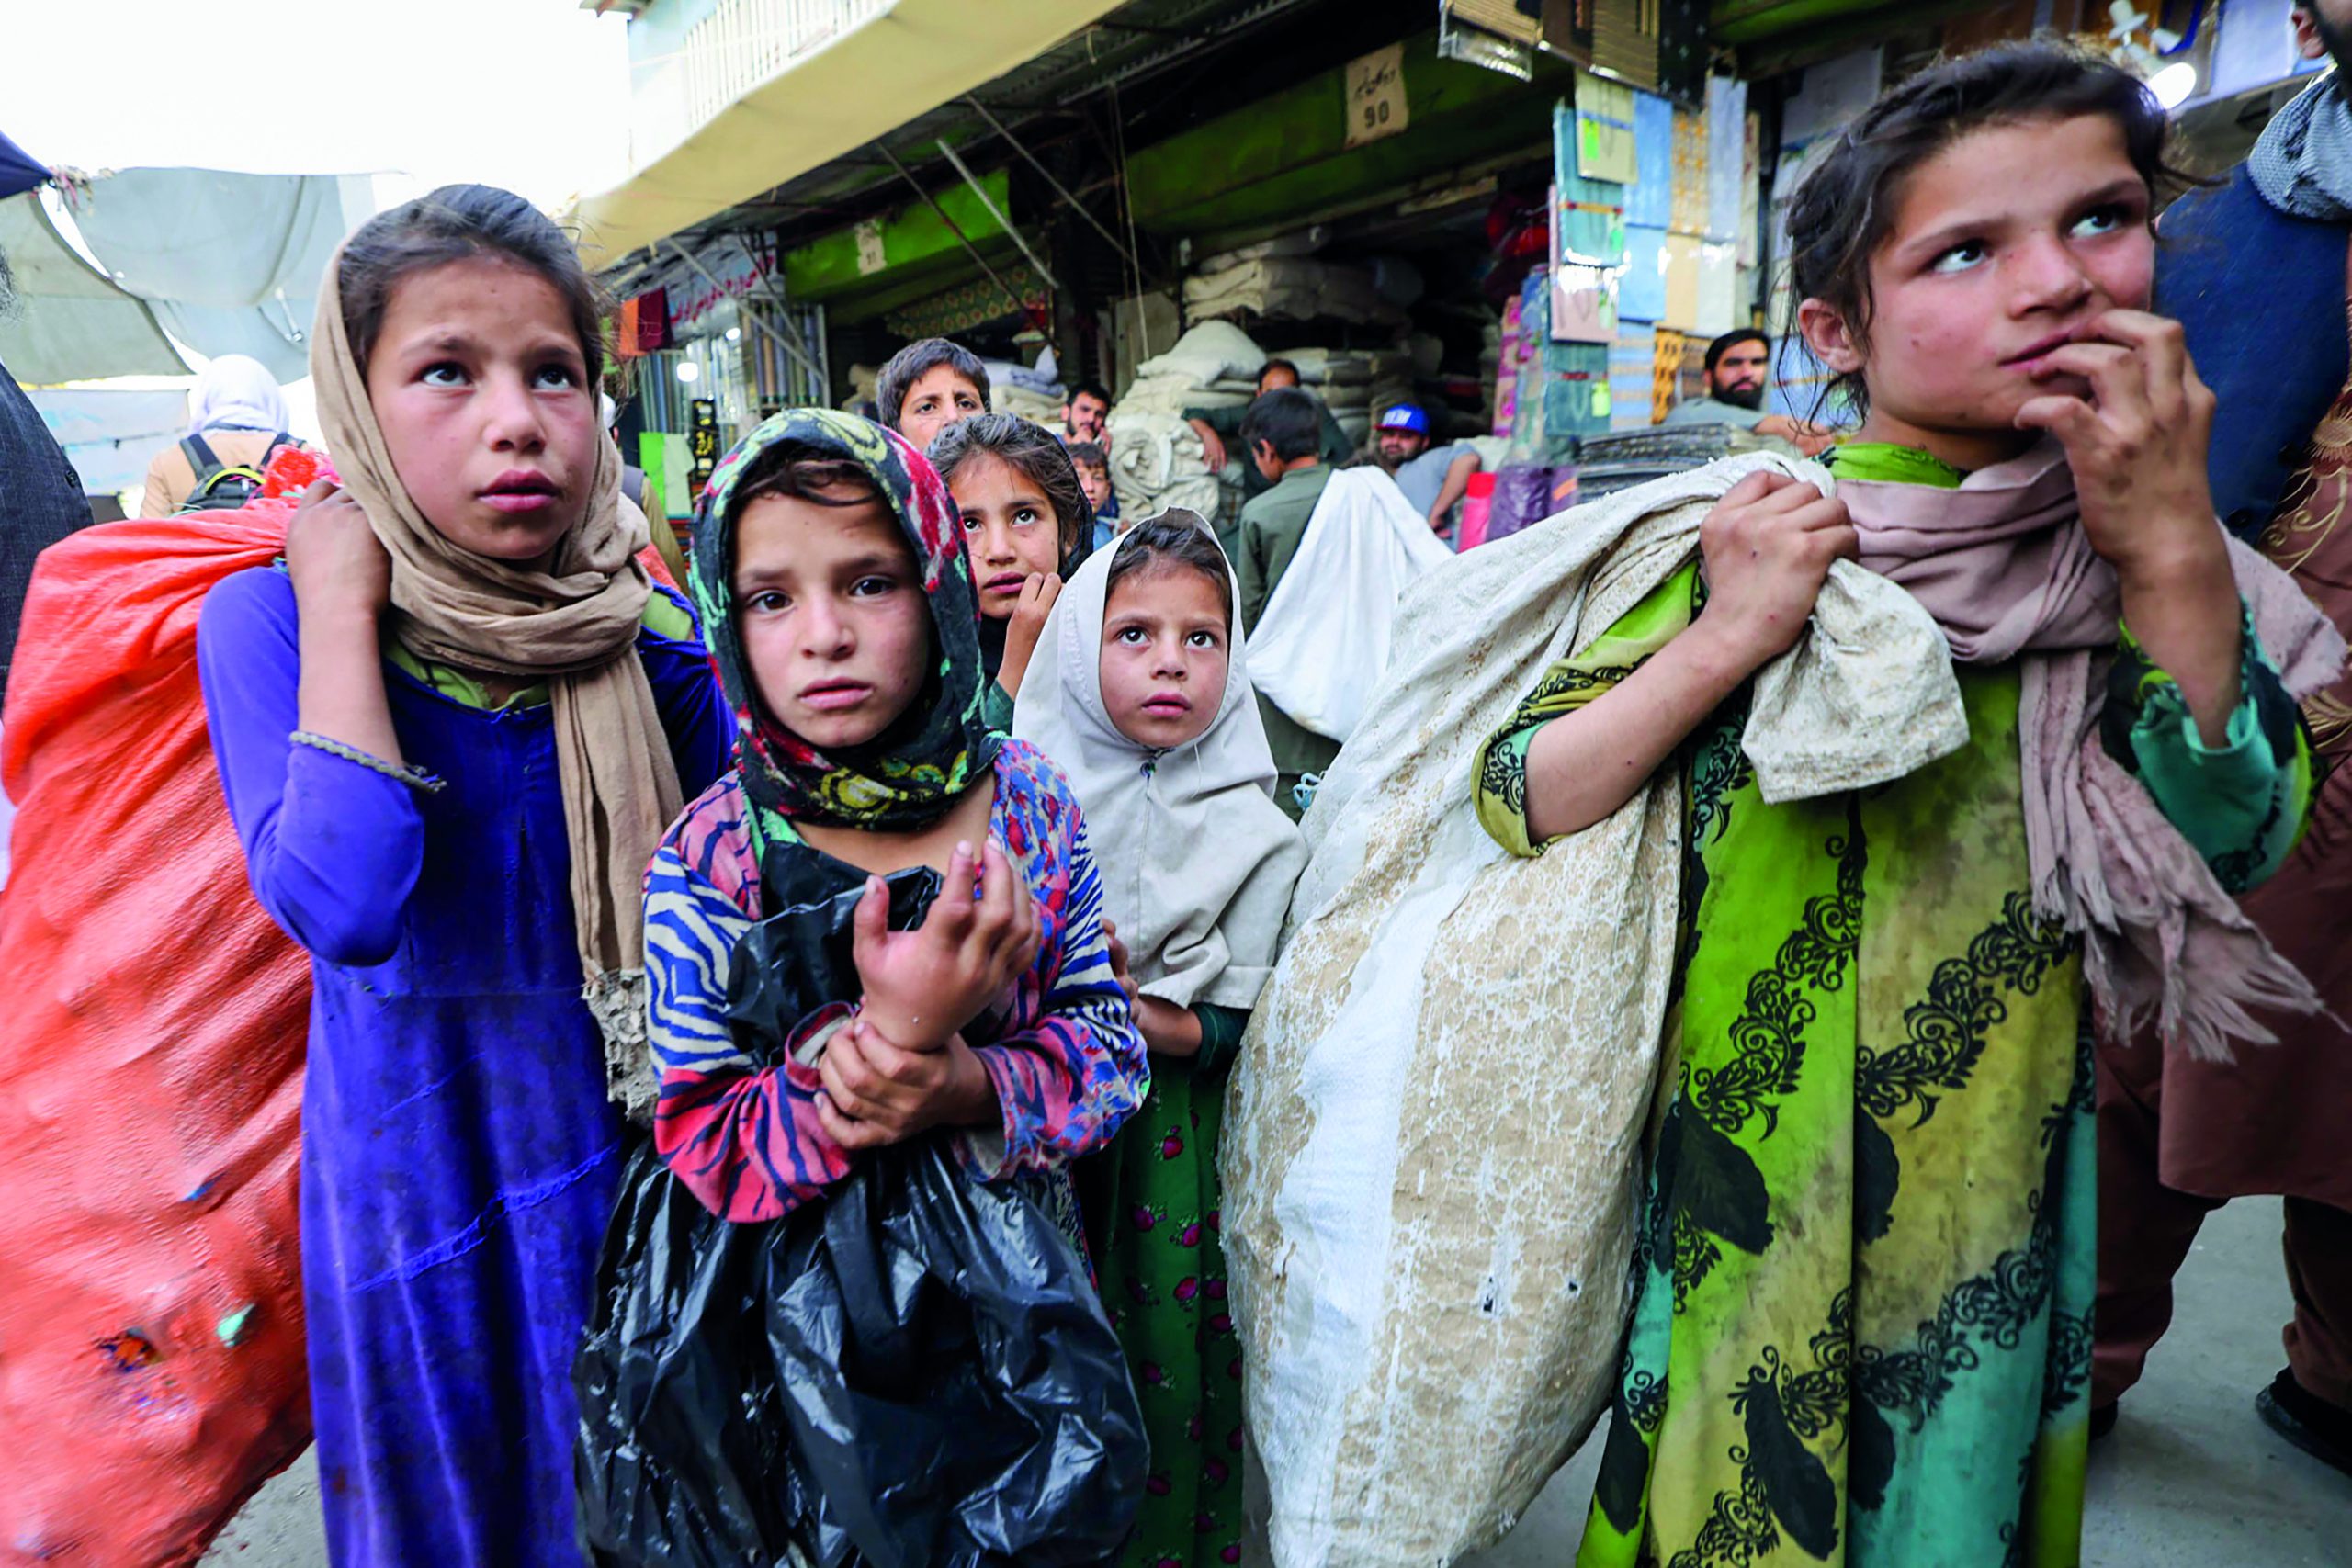 Neljä nuorta tyttöä tiiviissä ryhmässä markkinoilla. He kantavat tavaraa kangassäkeissä.